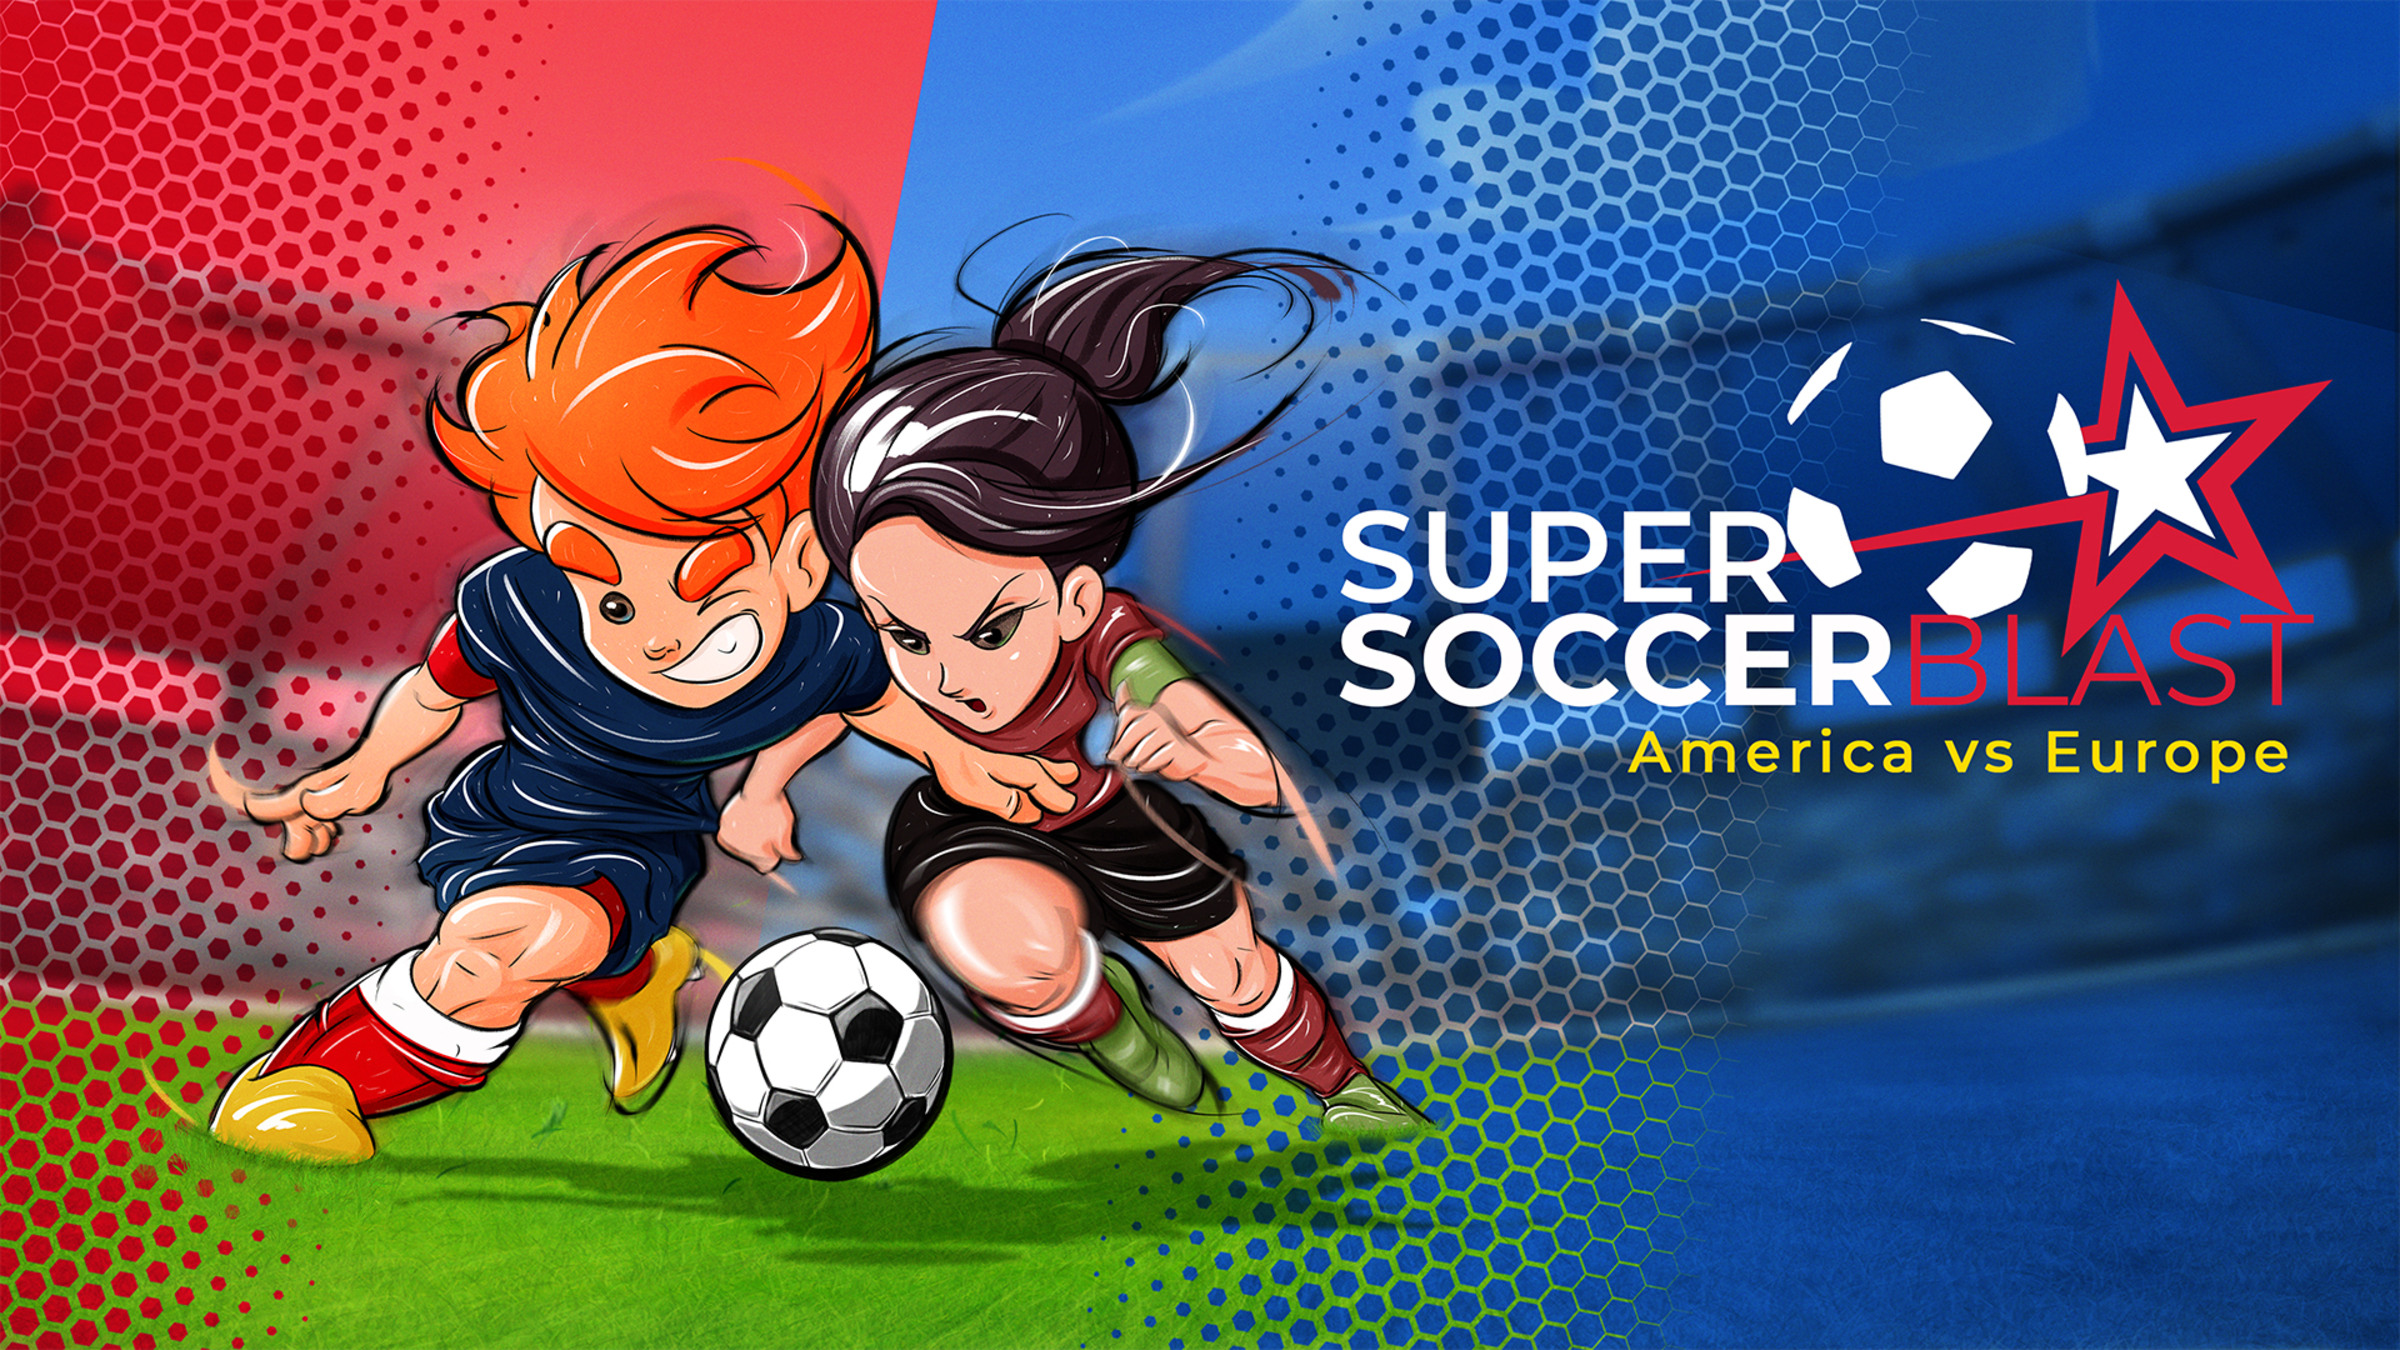 Super Arcade Soccer 2021 for Nintendo Switch - Nintendo Official Site